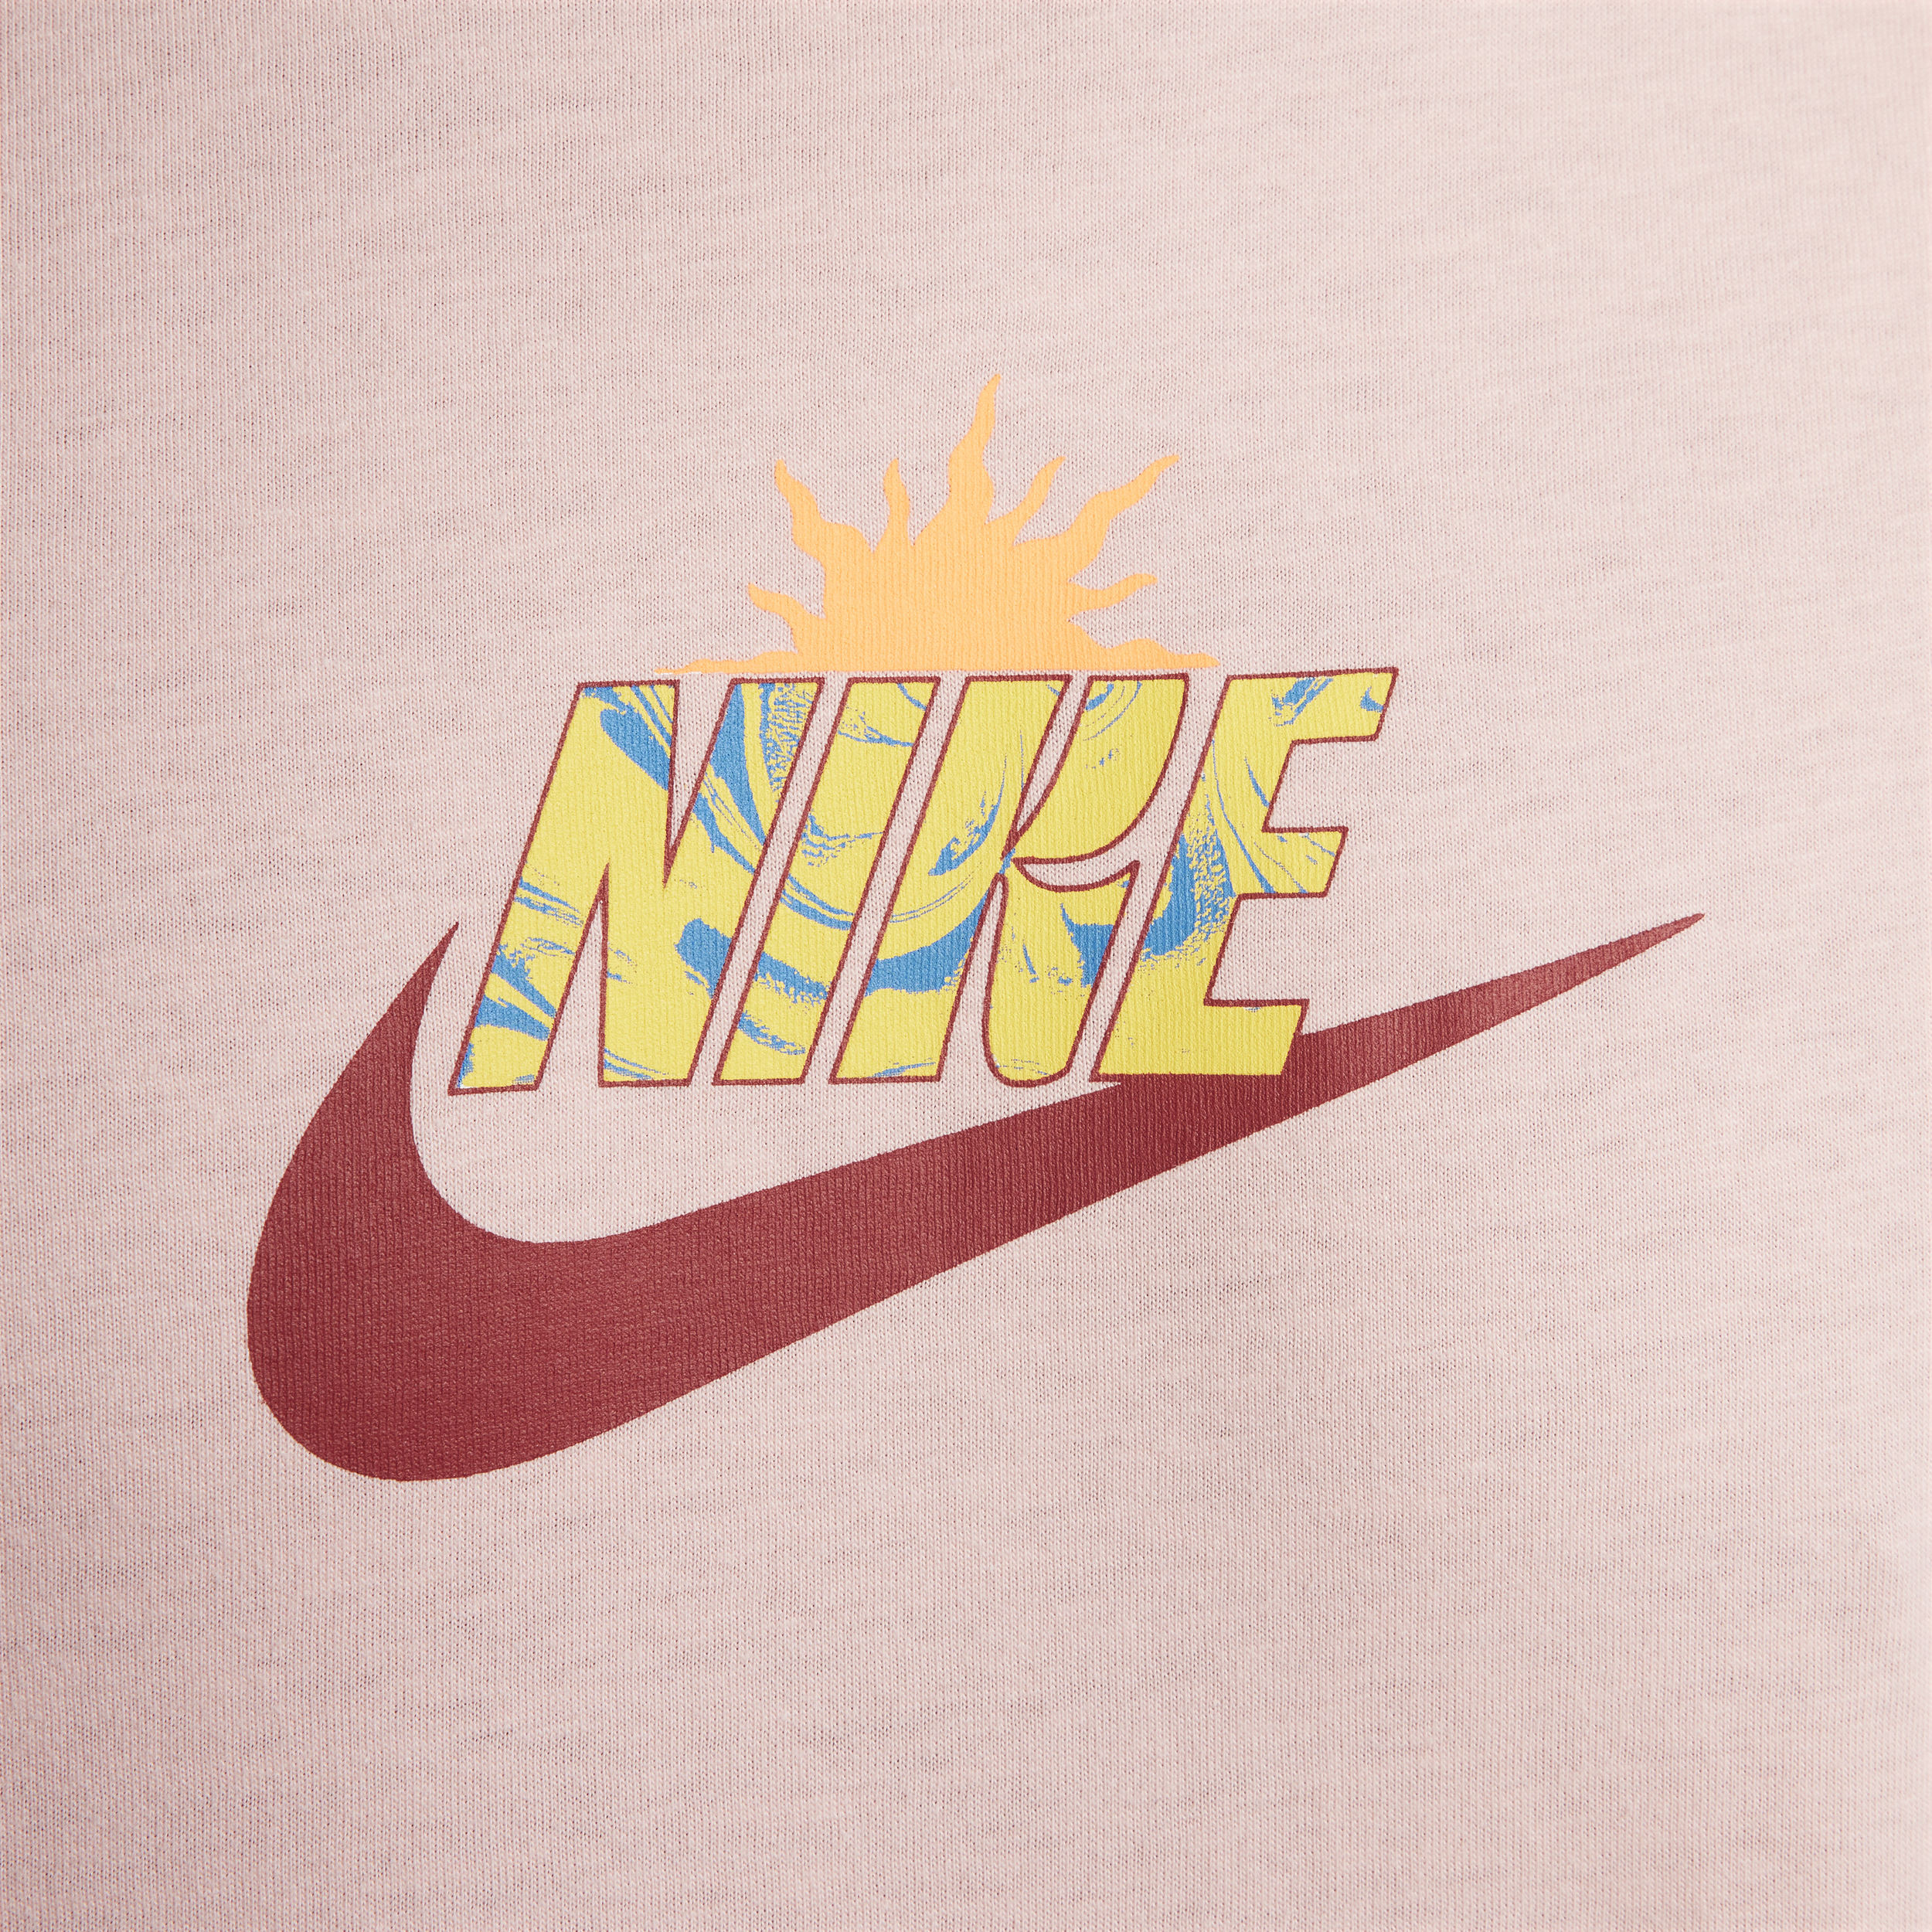 Nike Sportswear T-shirt Roze